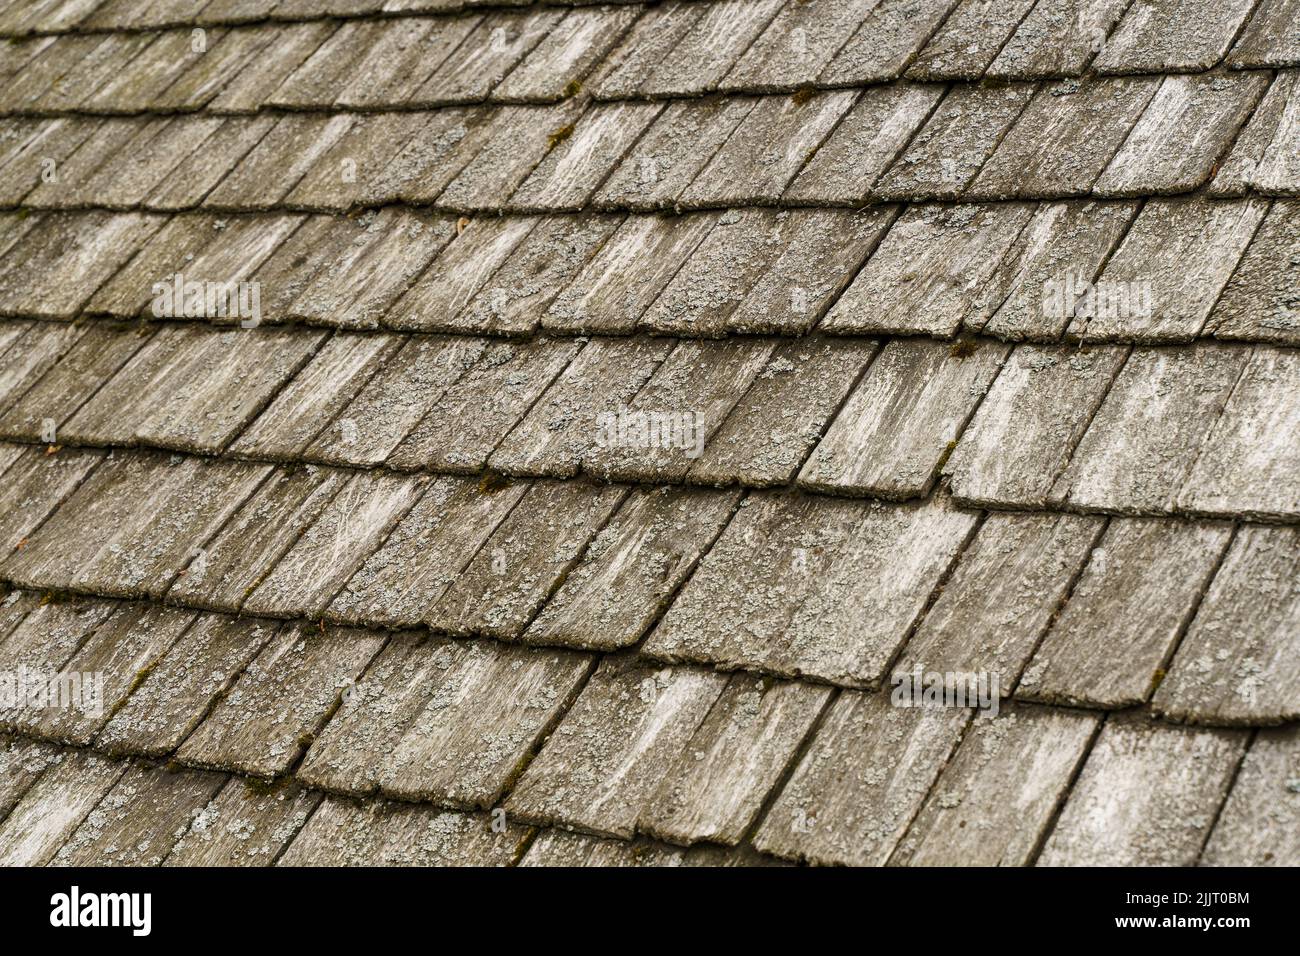 Antiguas tejas de madera en el techo de una casa de pueblo de fondo. Fotografía de alta calidad Foto de stock